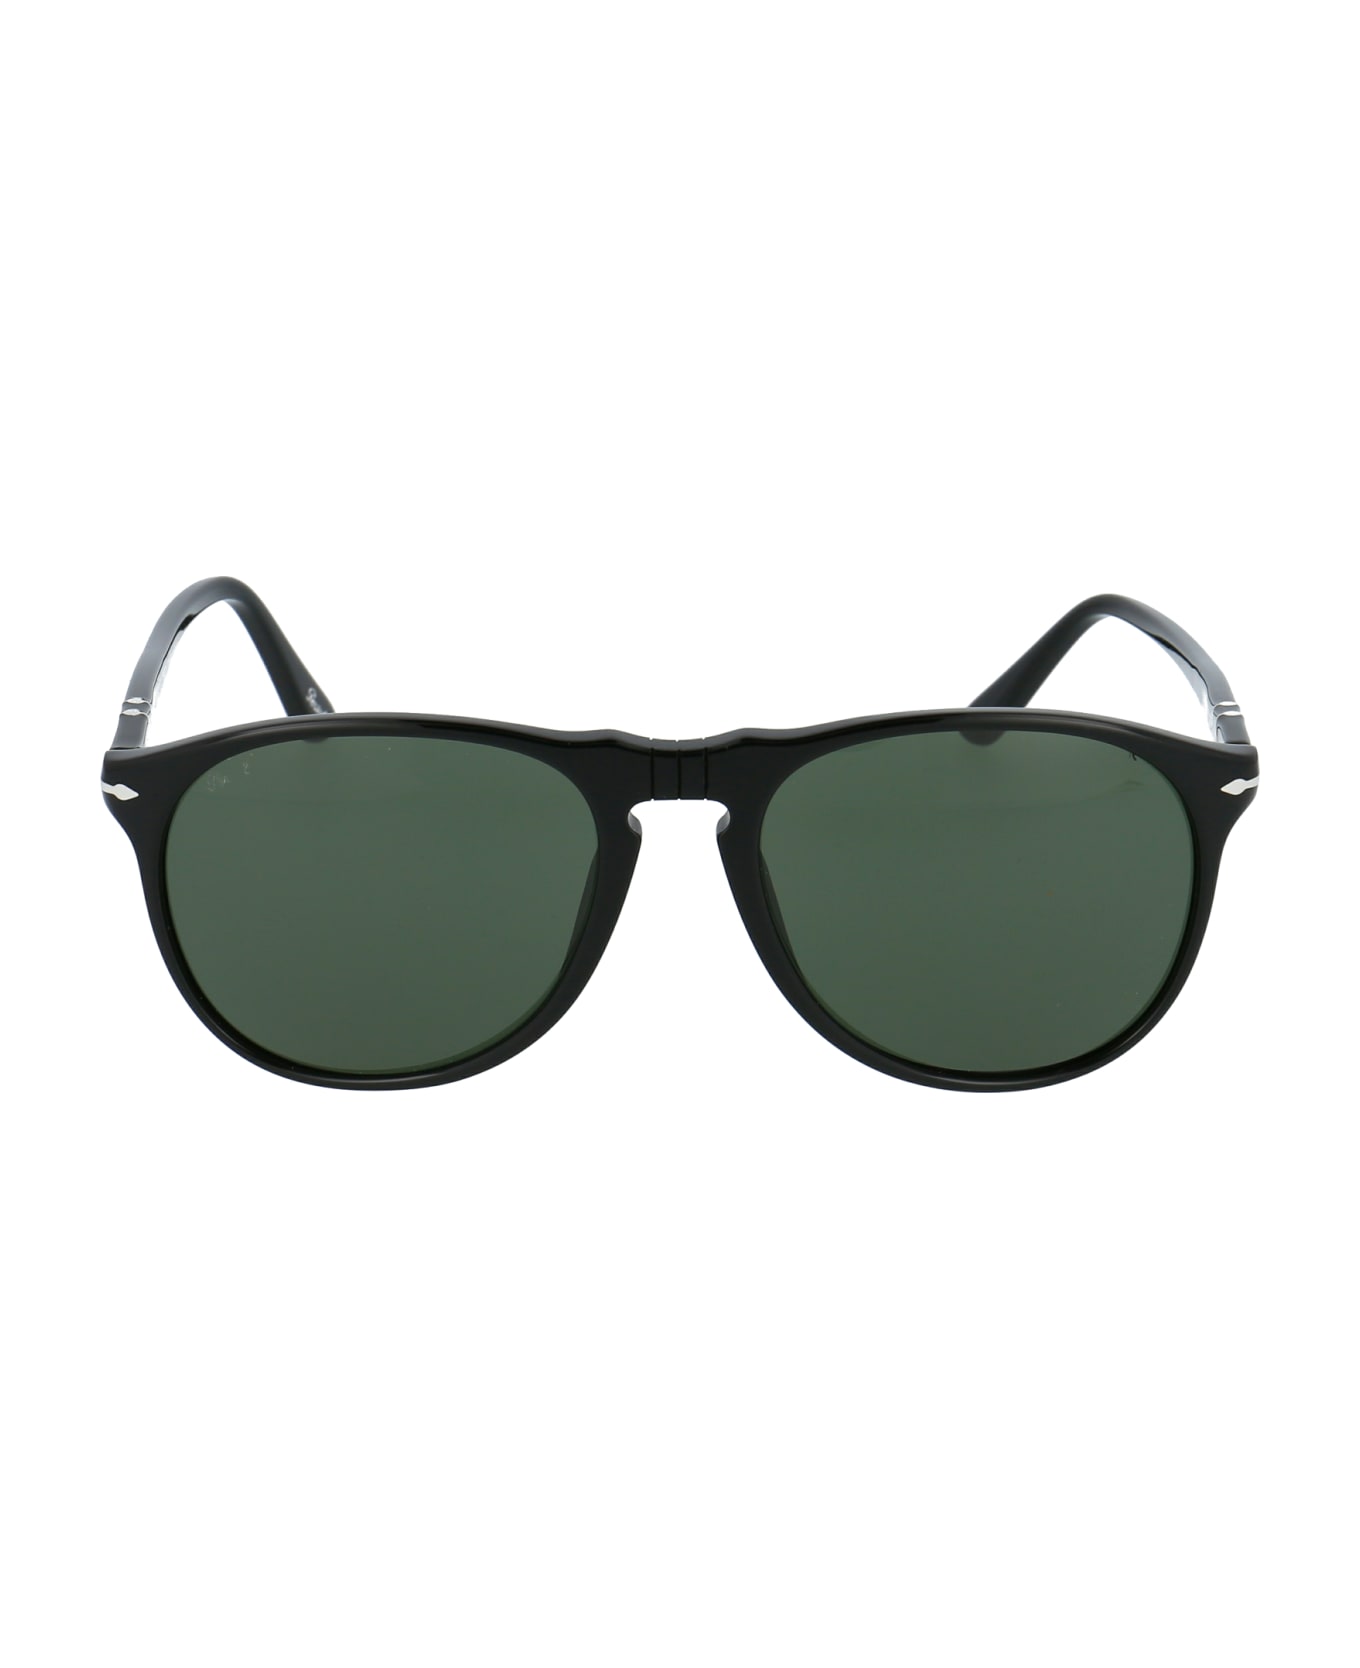 Persol 0po9649s Sunglasses - 95/31 BLACK